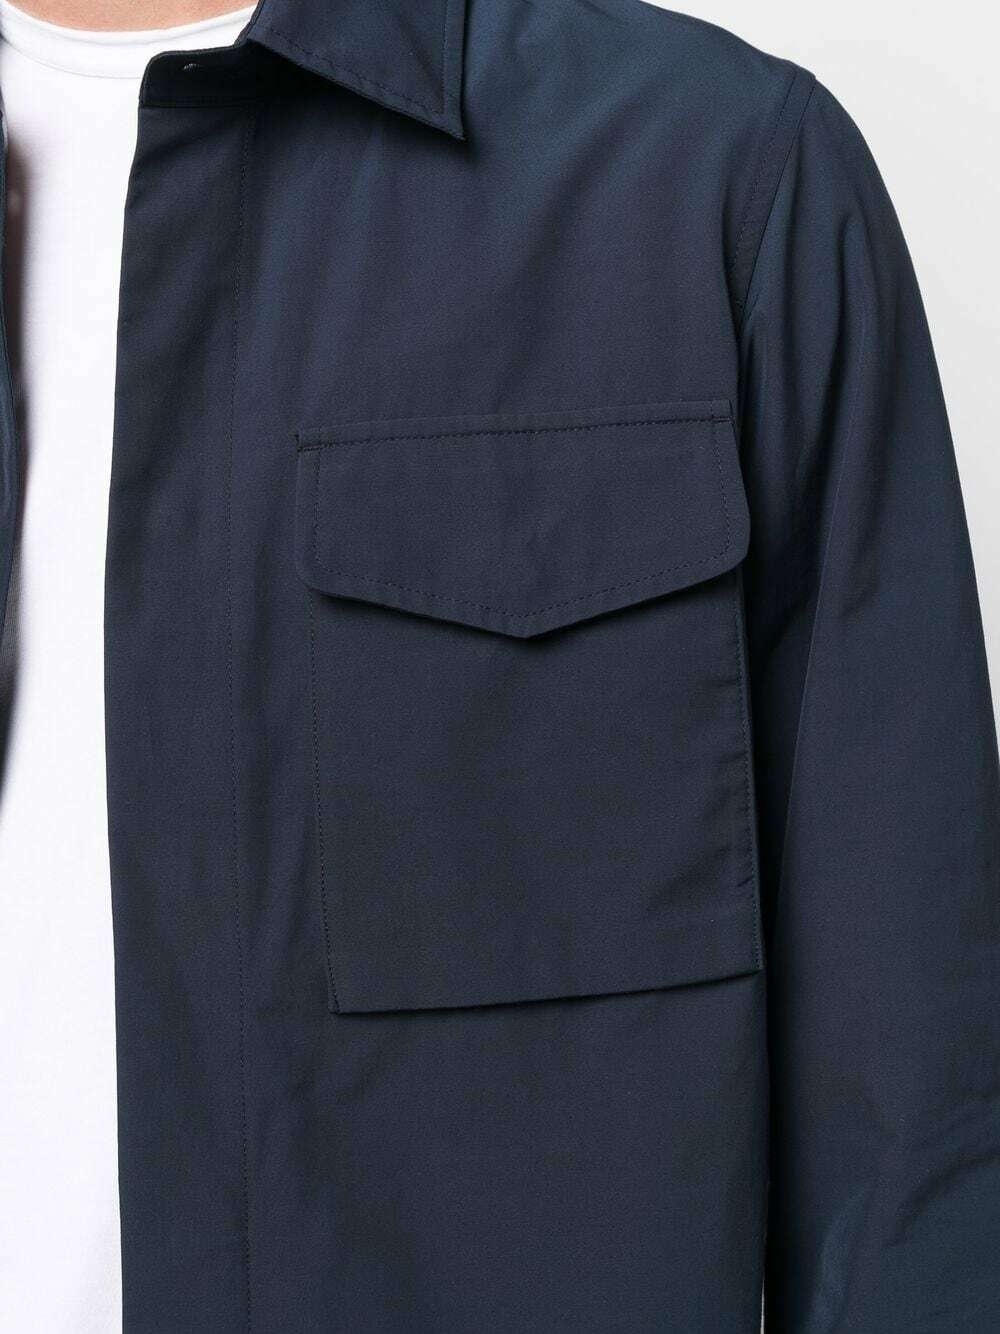 BARACUTA - Jacket With Logo Baracuta